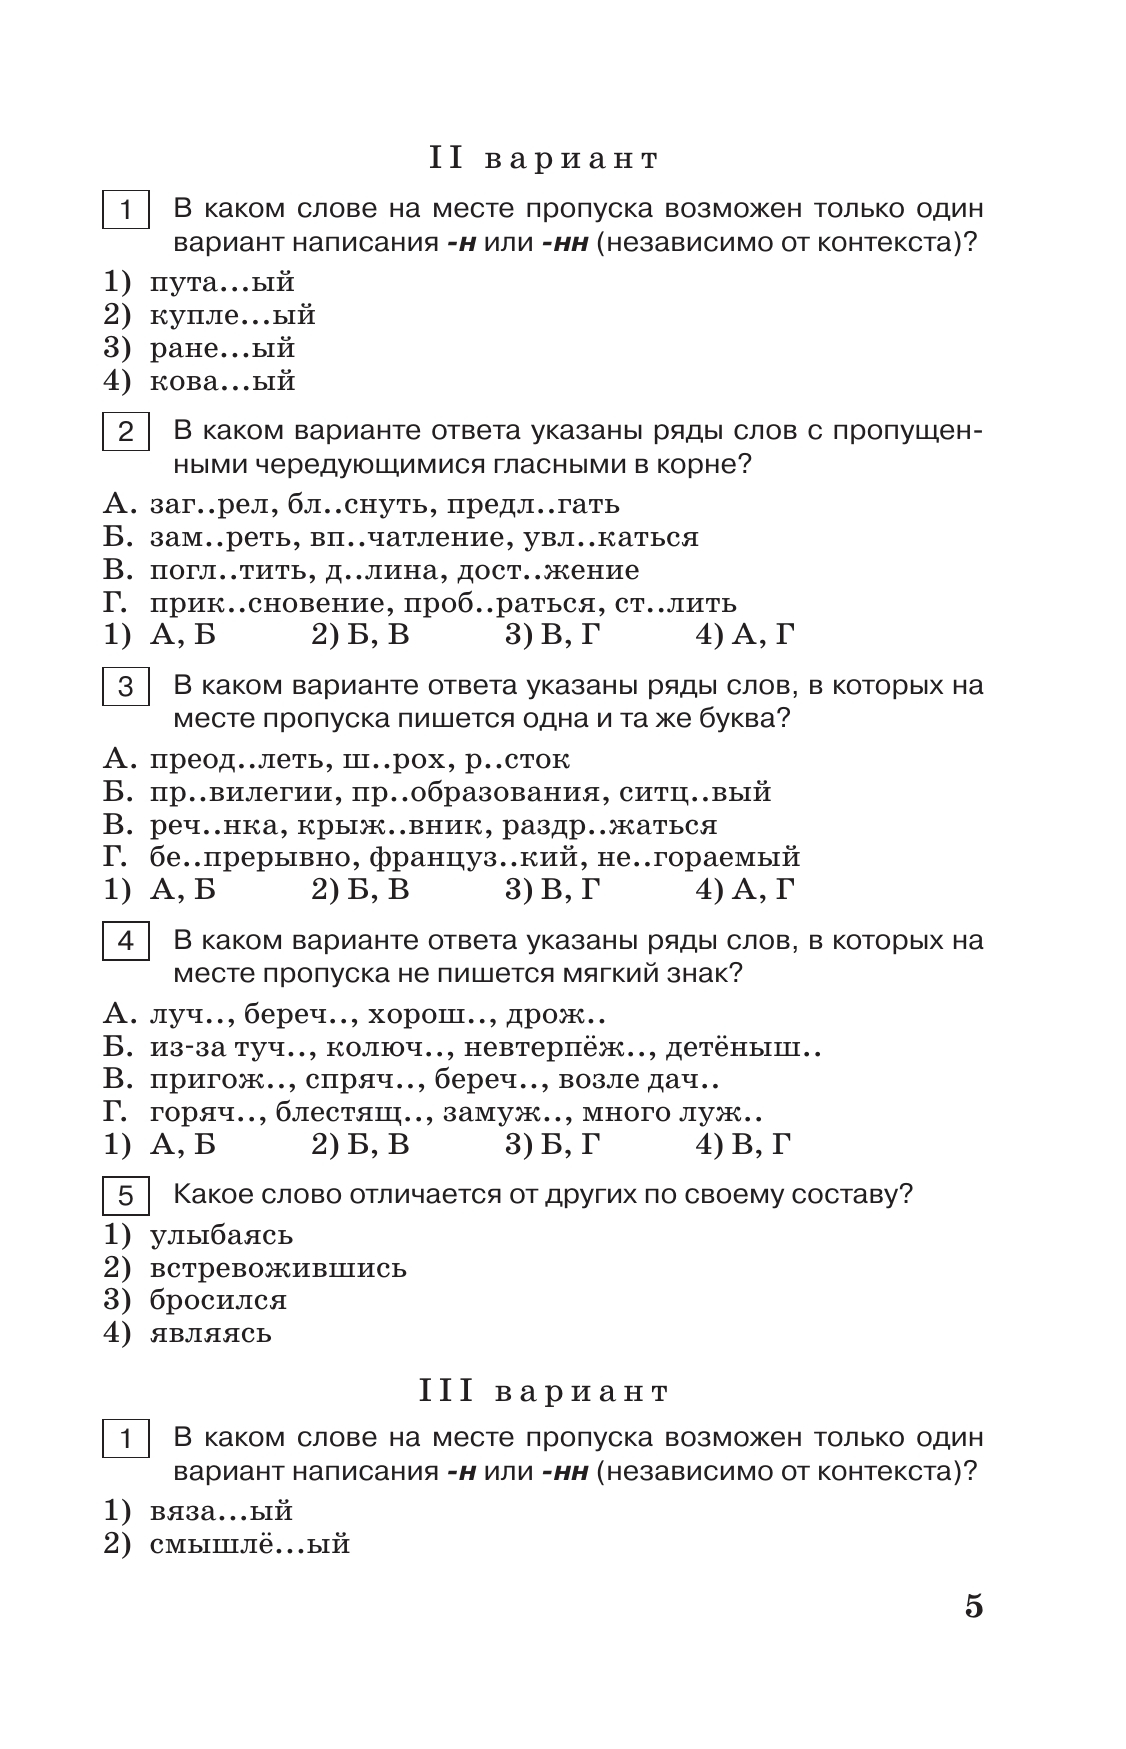 Тестовые задания по русскому языку. 8 класс. 11